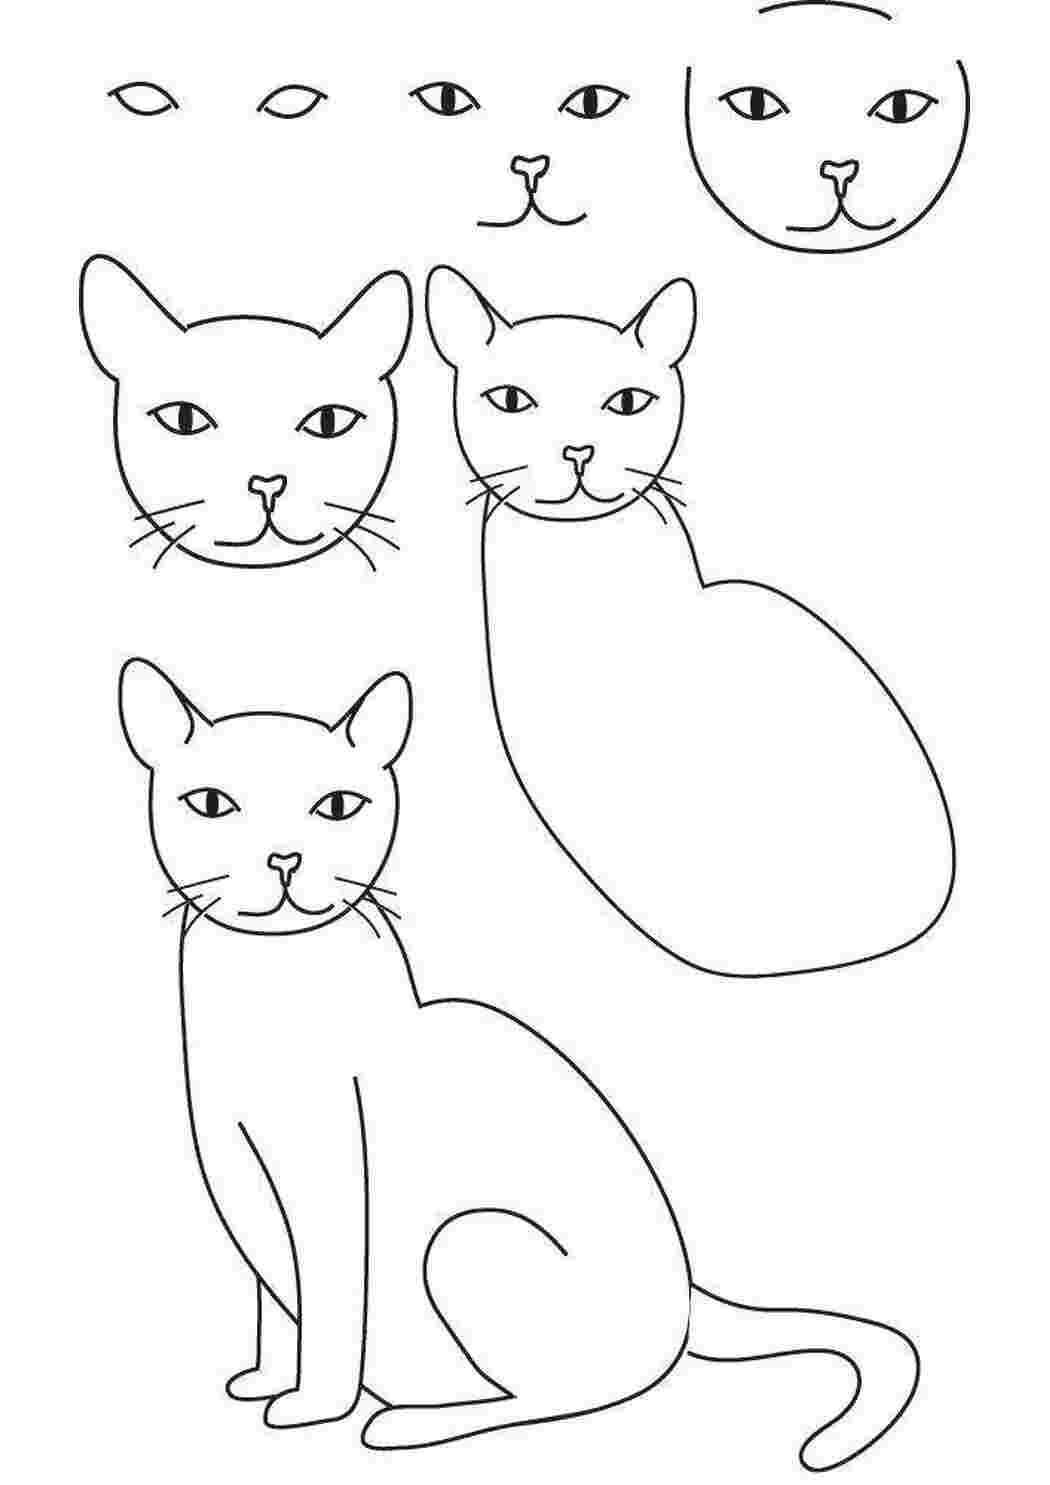 Как надо нарисовать рисунок. Поэтапное рисование кошки. Этапы рисования кошки. Поэ апное рисование кошки. Схема рисования котенка для детей.